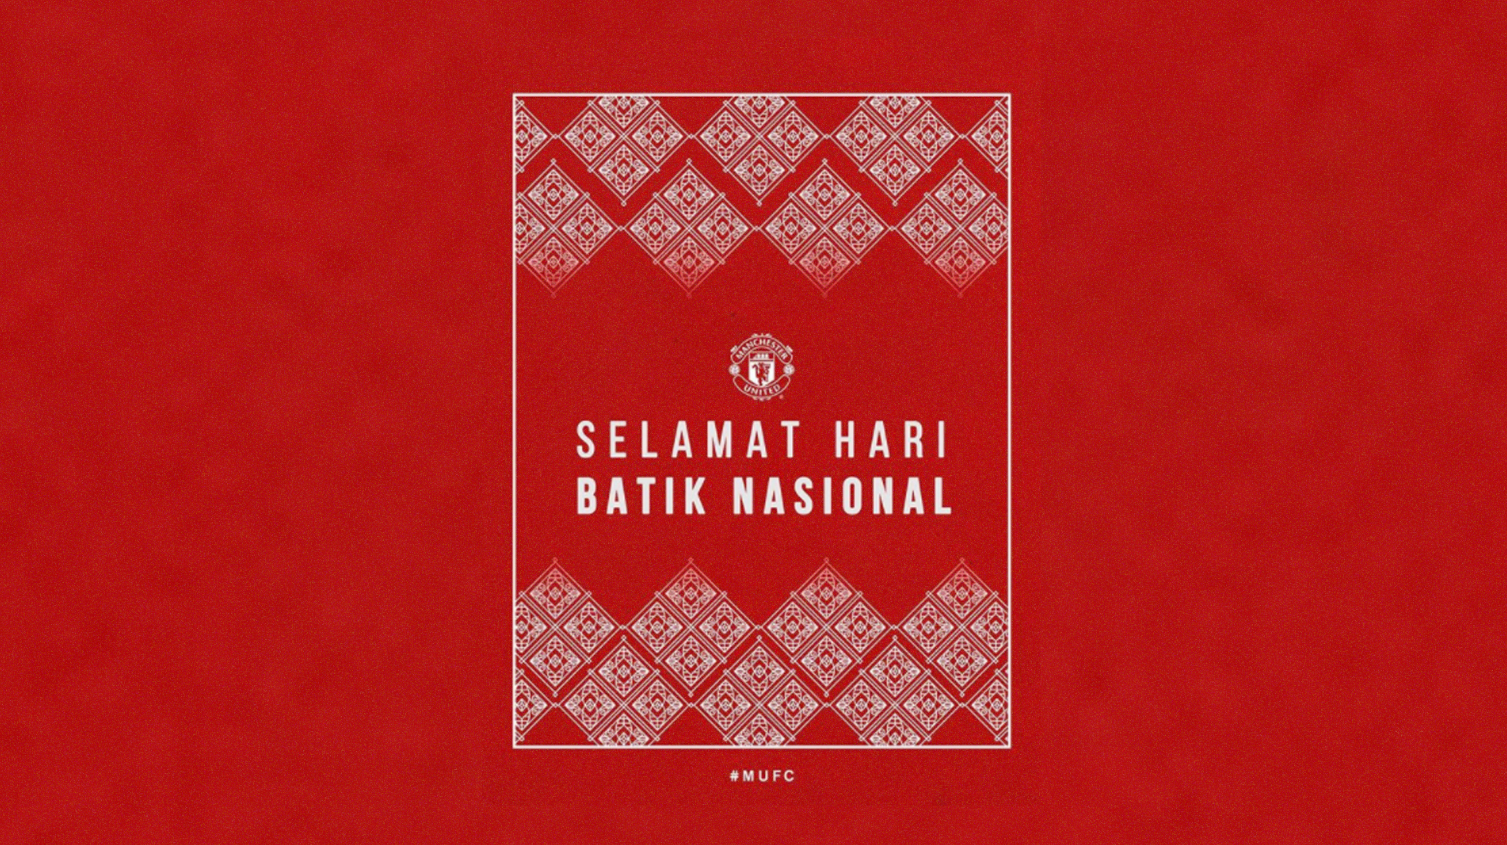 Ucapan Hari Batik Nasional untuk fans Manchester United di Indonesia. (Foto: Instagram MU)